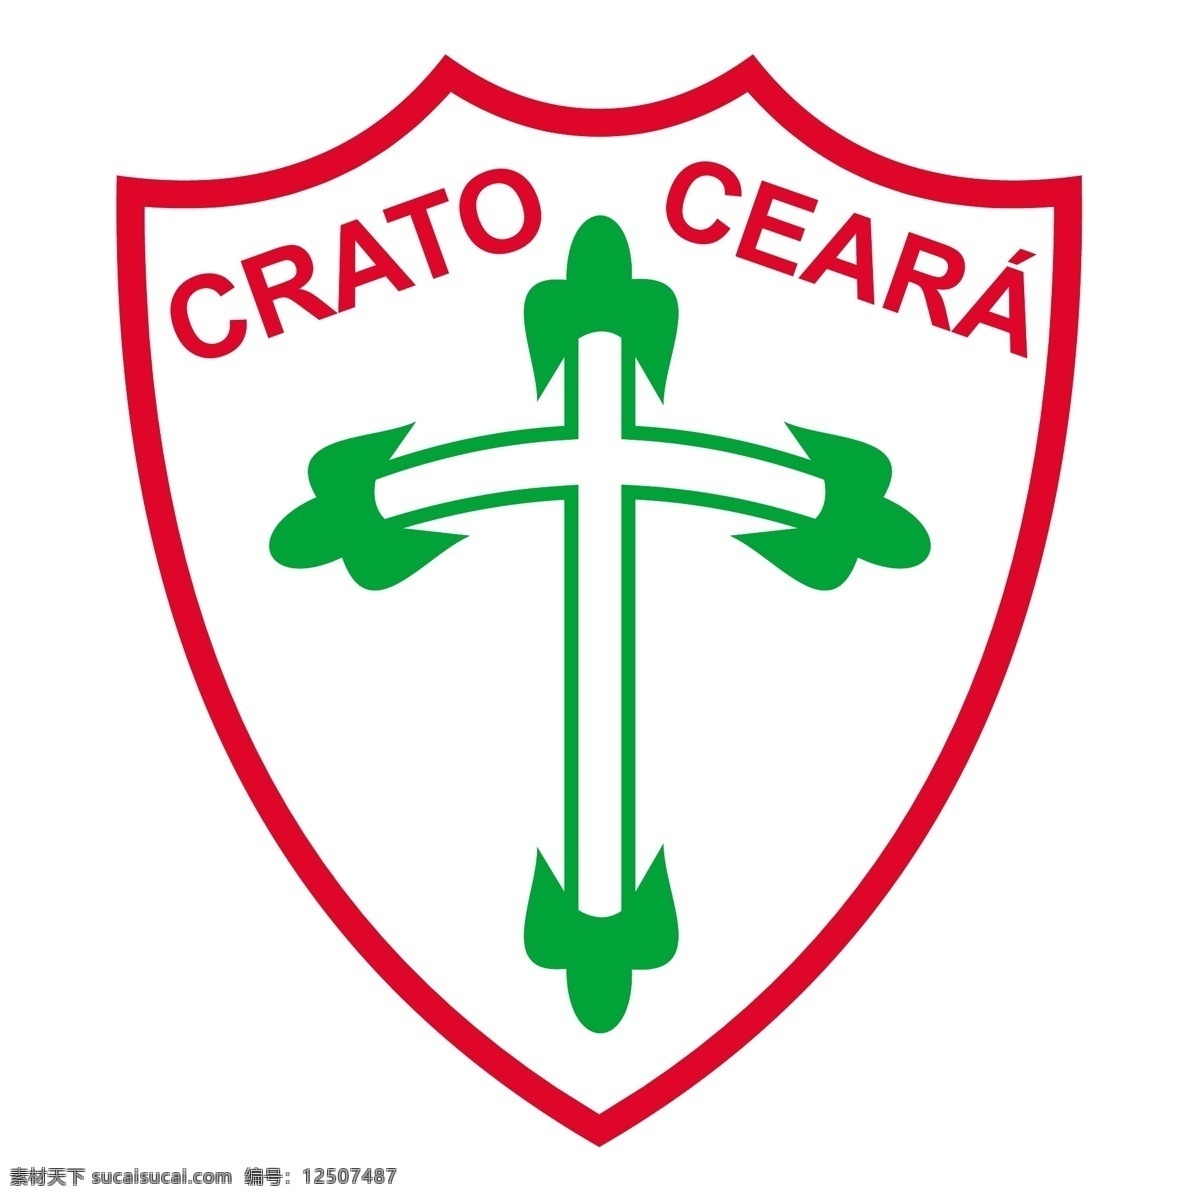 葡萄牙 足球 俱乐部 德克 拉图 ce 免费 标志 葡萄牙人 psd源文件 logo设计